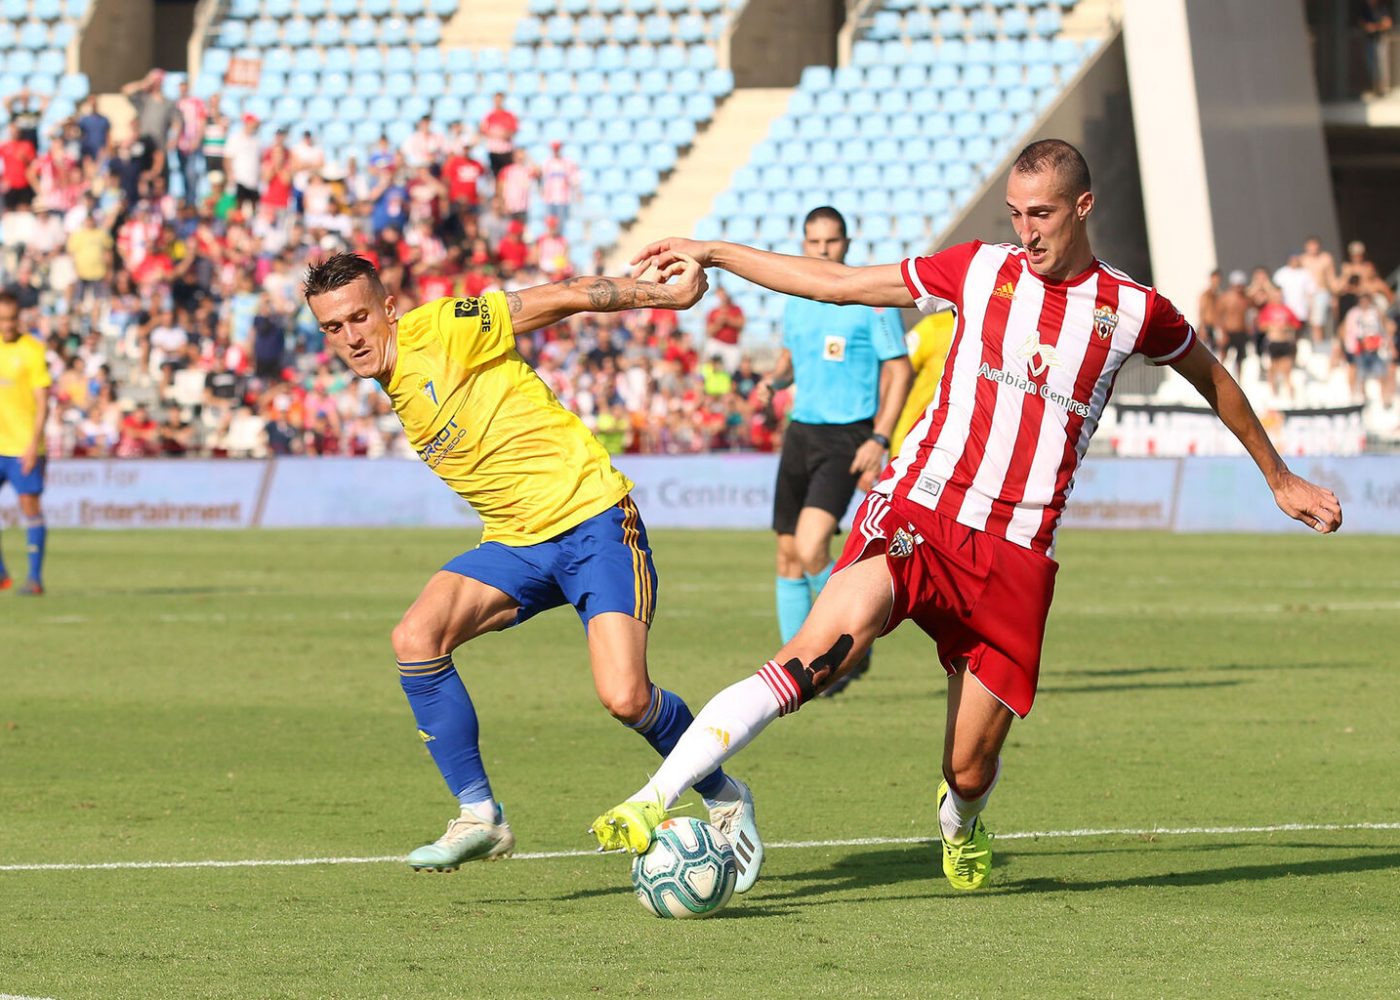 Nhận định Girona vs Tenerife 02h00 ngày 10/05